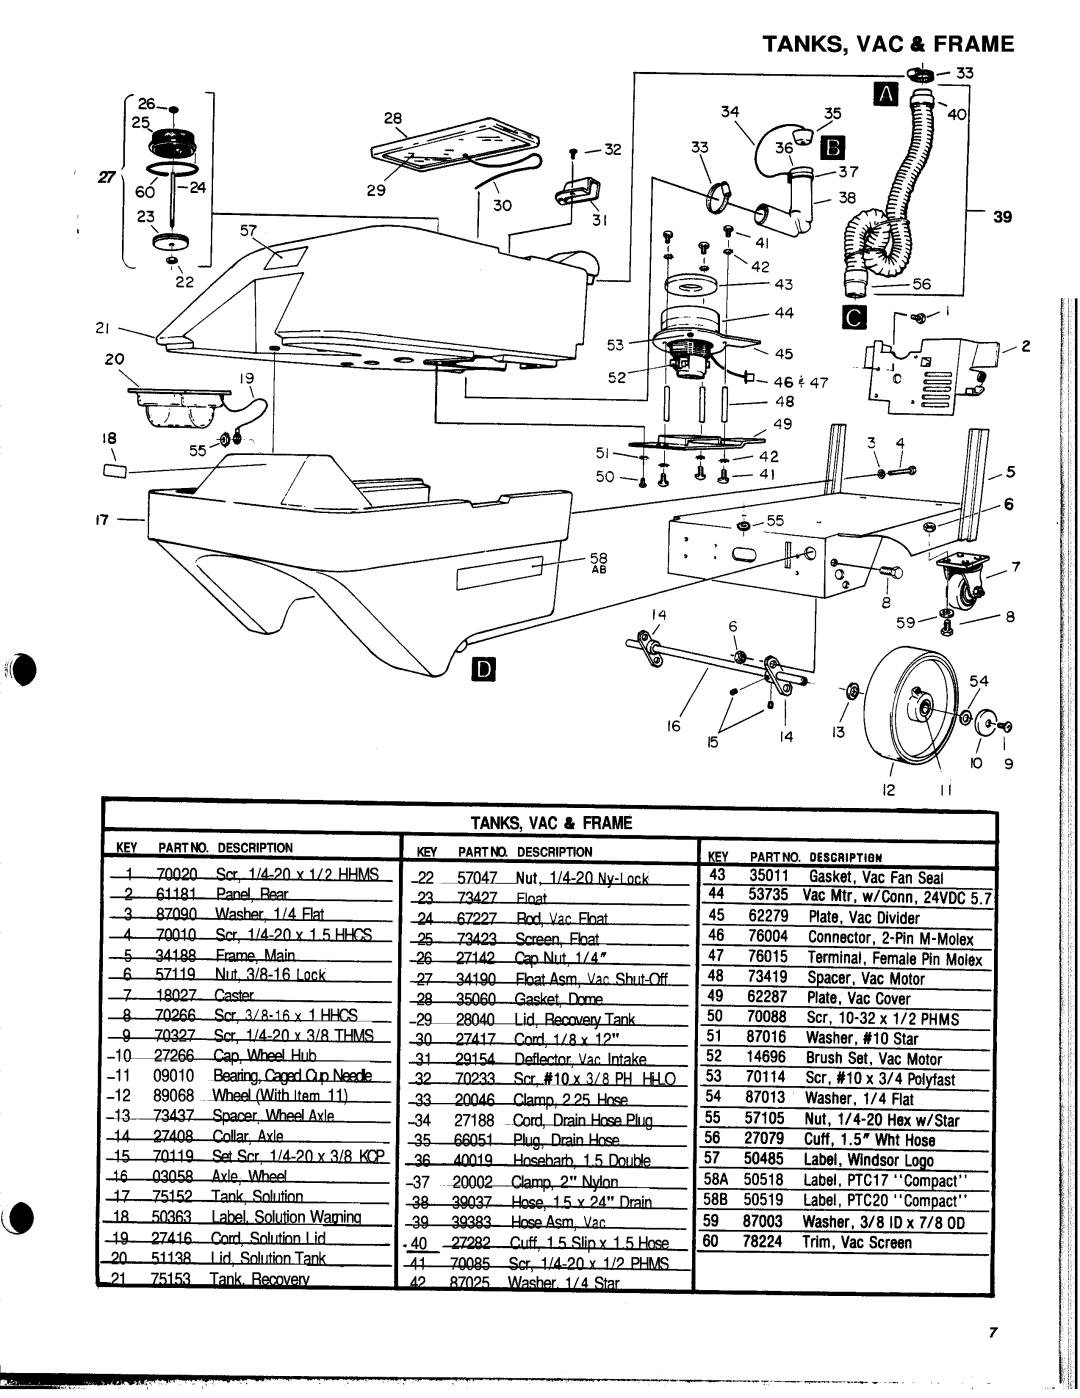 Windsor PTC17 PK, PTC20 PK manual Tanks, Vac & Frame, TANKS, VAC 6 FRAME 